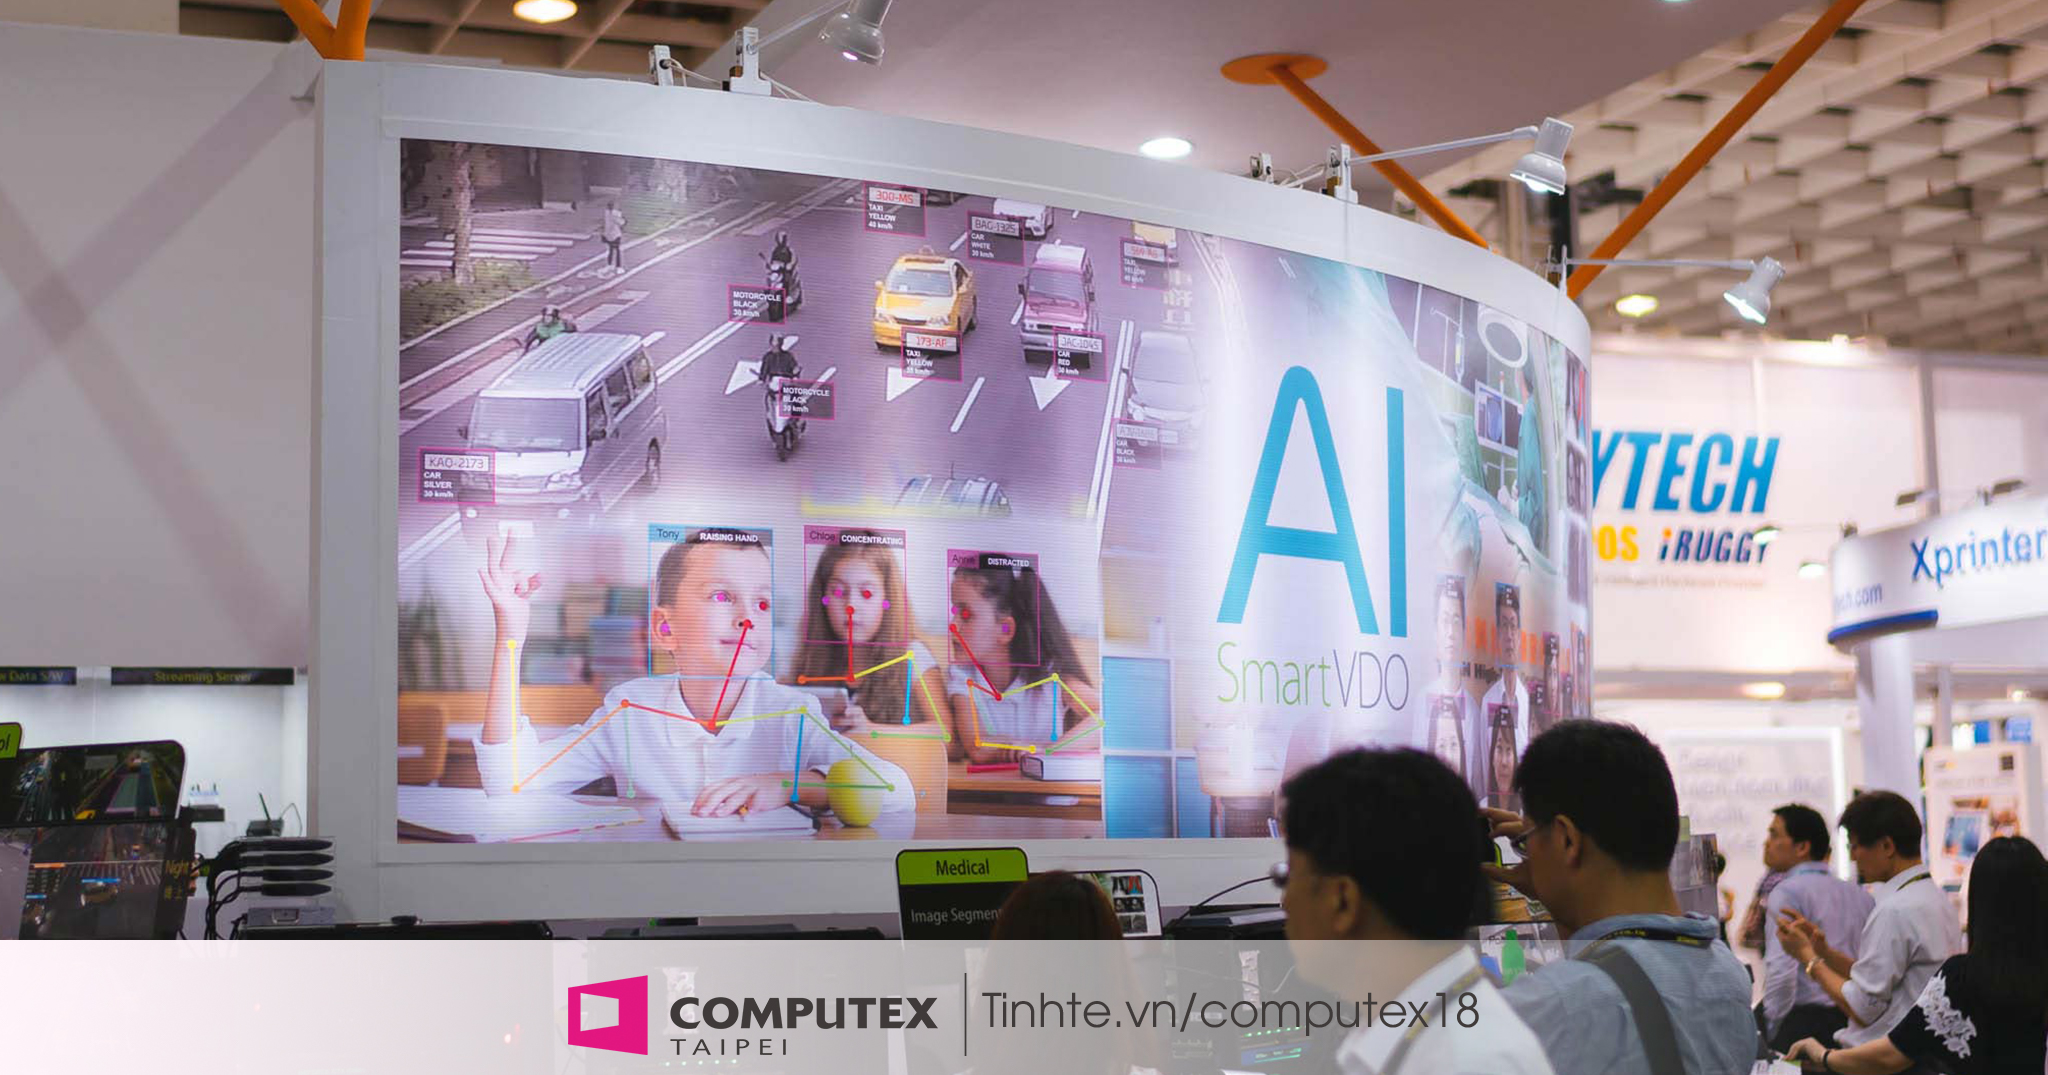 #Computex18 Hàng loạt các hãng máy tính tập trung vào công nghệ AI và Blockchain